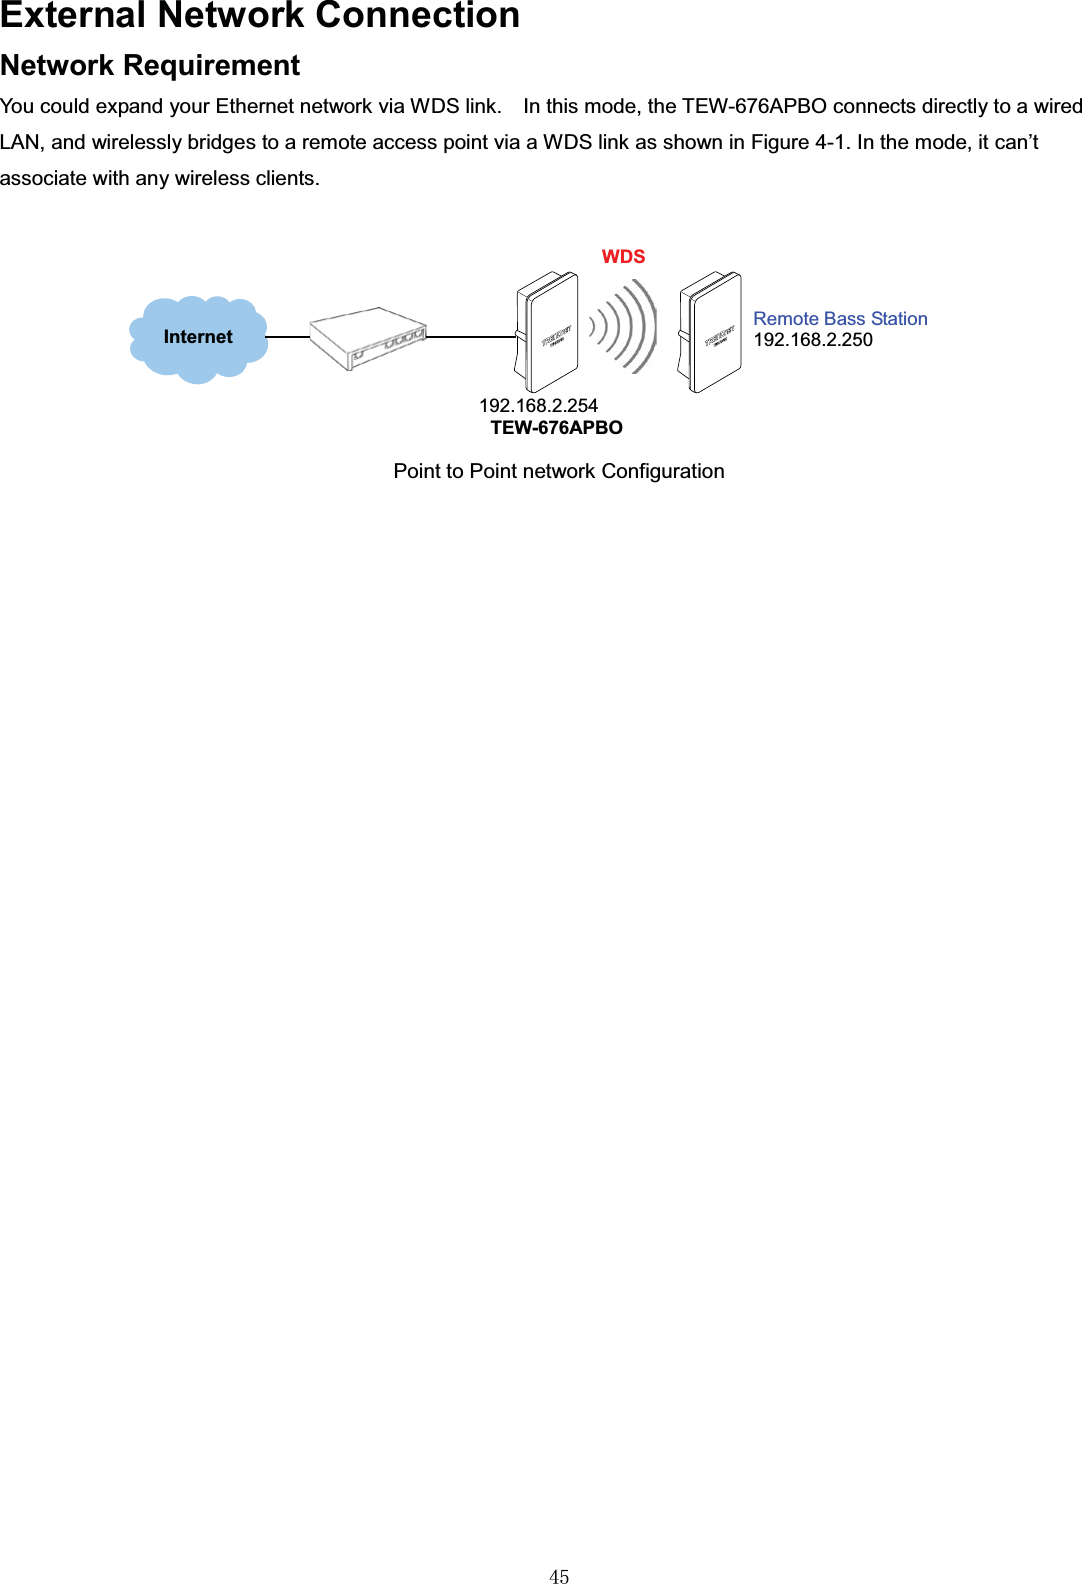 㻠㻡External Network ConnectionNetwork RequirementYou could expand your Ethernet network via WDS link. In this mode, the TEW-676APBO connects directly to a wired LAN, and wirelessly bridges to a remote access point via a WDS link as shown in Figure 4-1. In the mode, it can’t associate with any wireless clients.Point to Point network ConfigurationInternet192.168.2.254WDSRemote Bass Station192.168.2.250TEW-676APBO